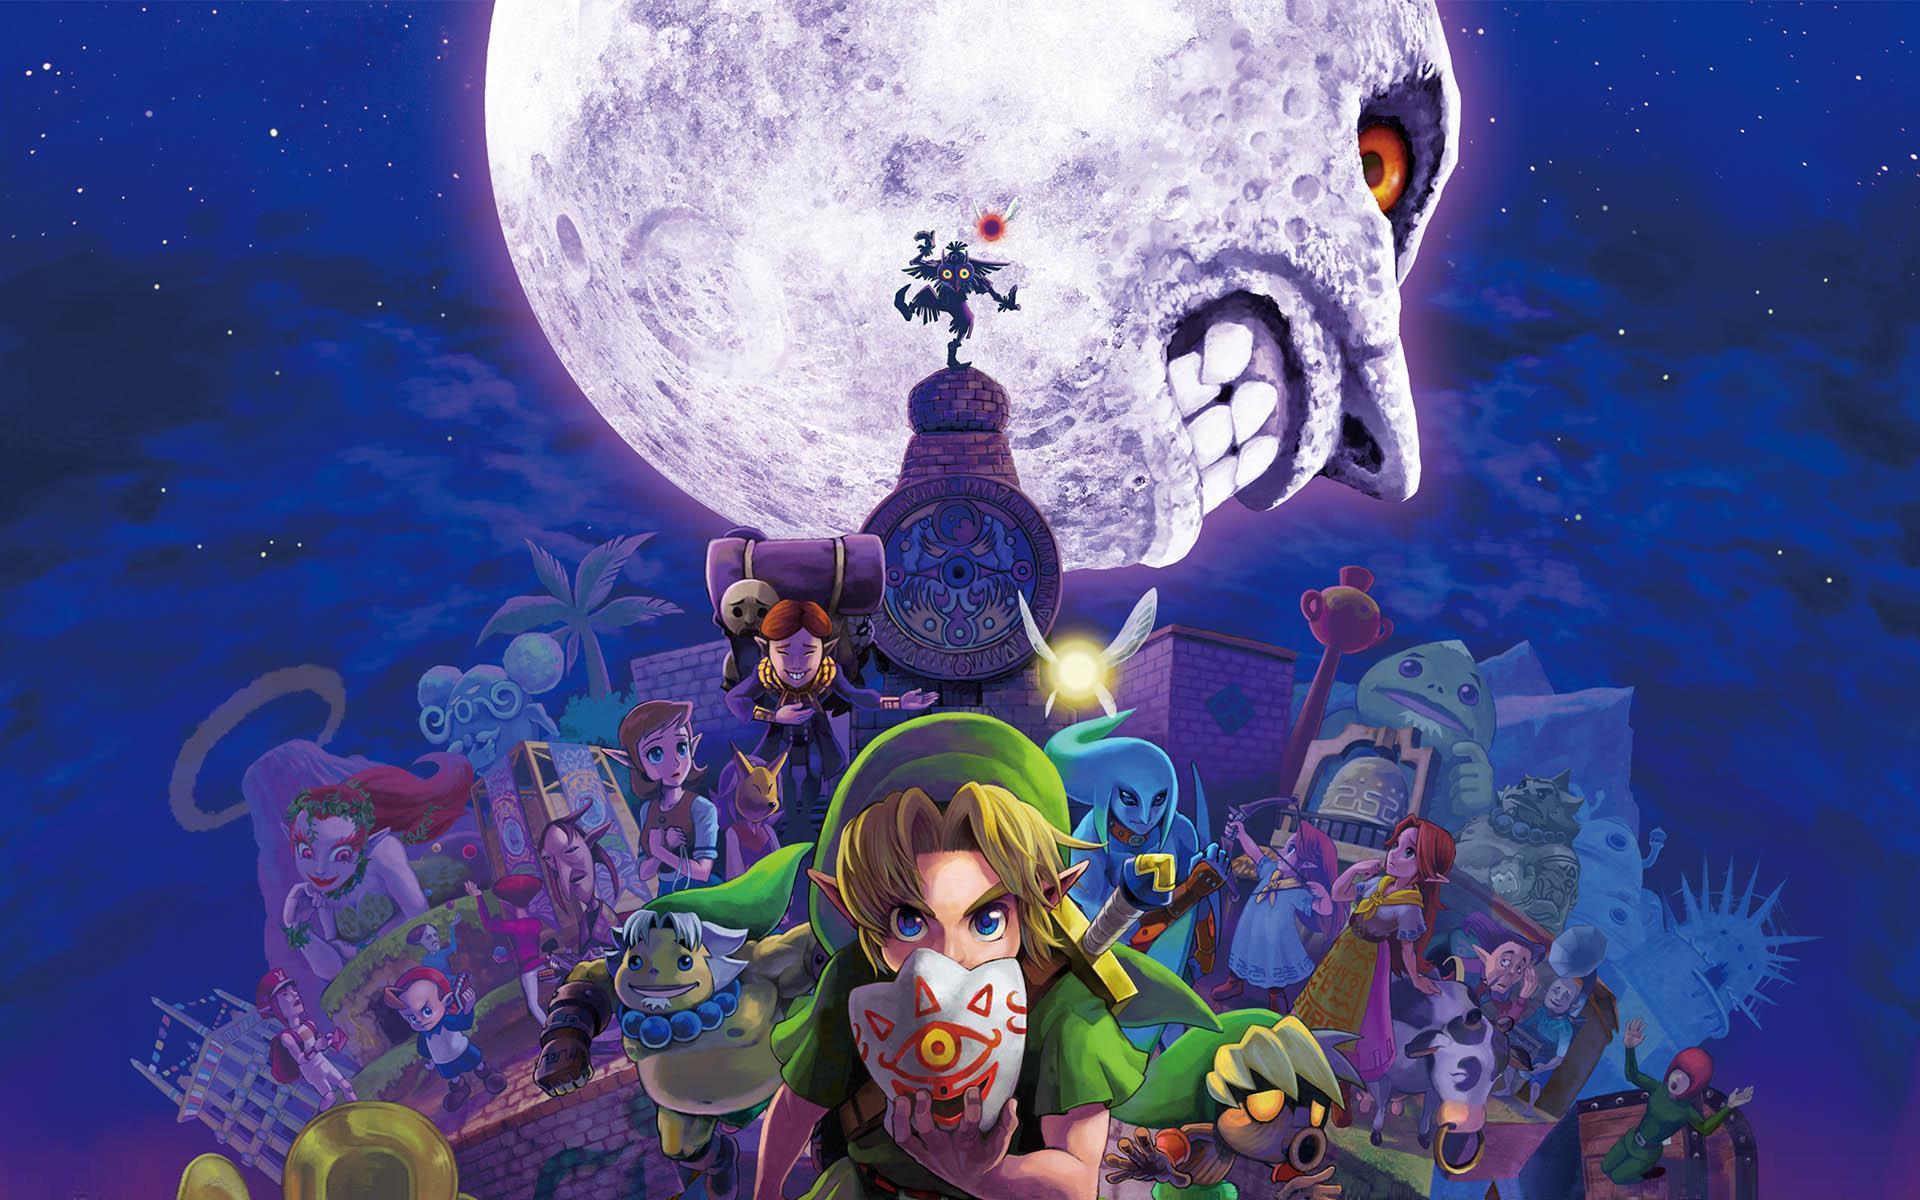 Legend Of Zelda Art Moon Wallpaper Hd Games 4k Wallpapers Images Photos And Background Wallpapers Den